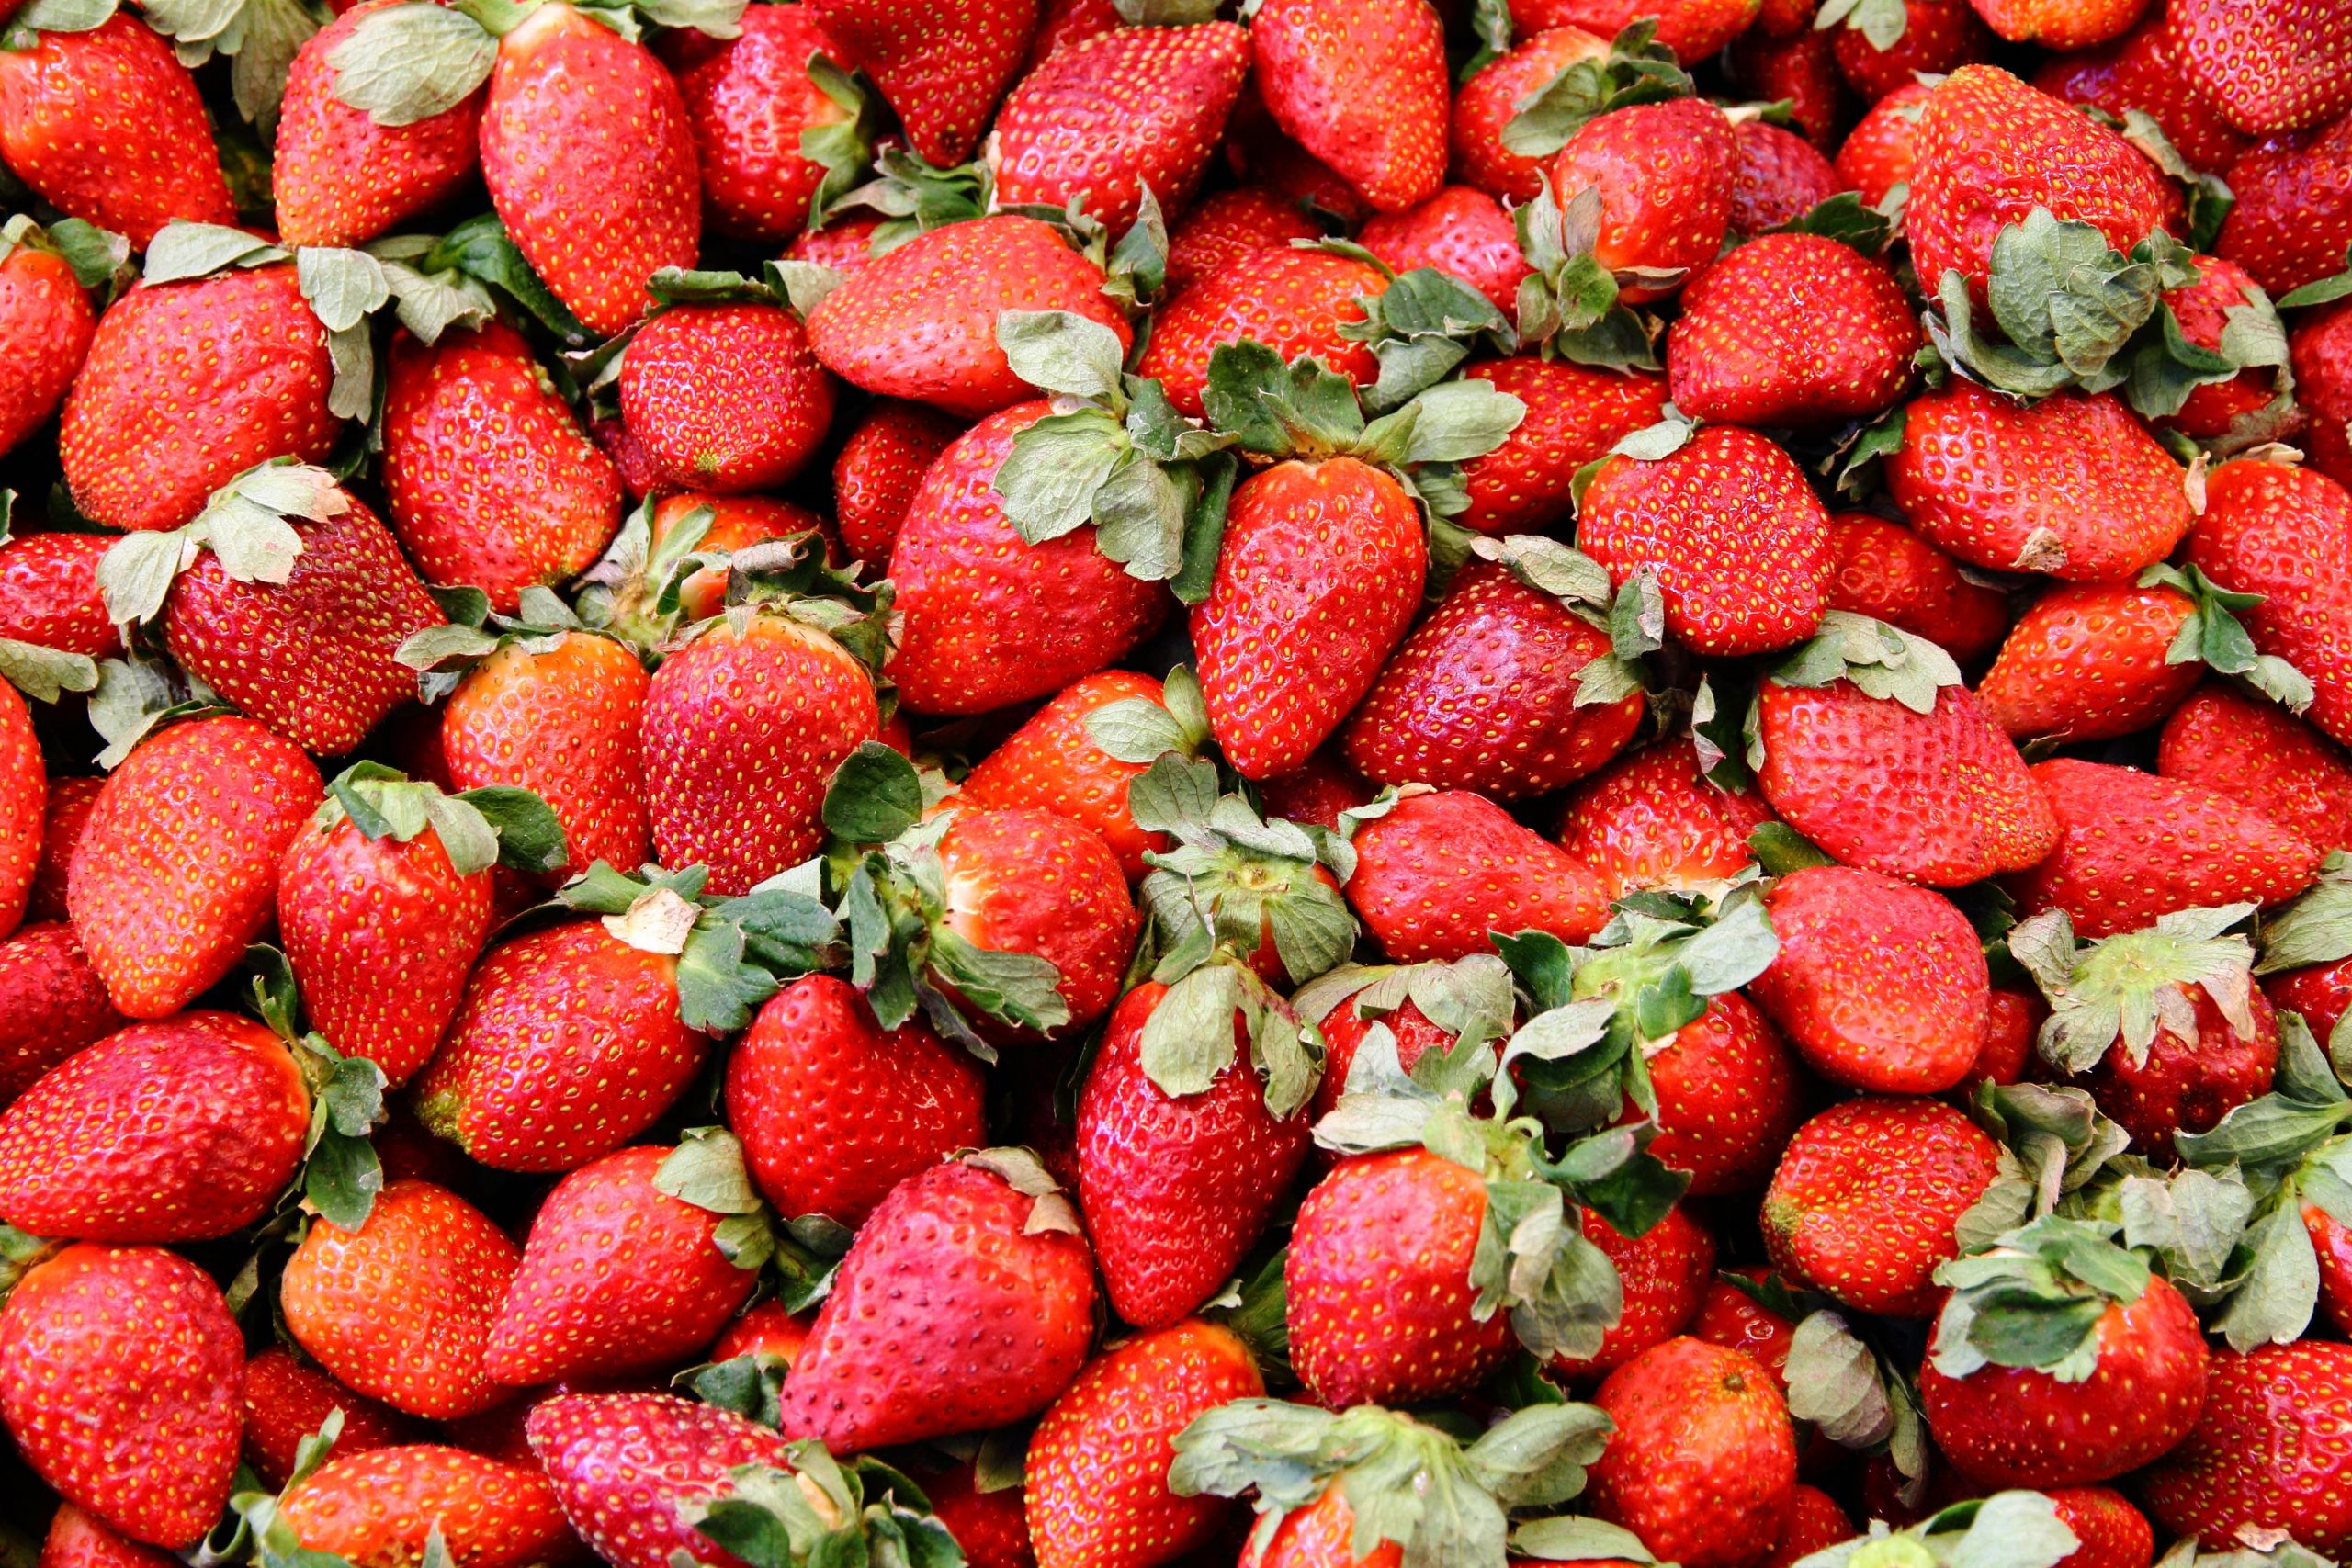 Bad Brambacher Garten Limonade Genial What to Do with Mushy Strawberries